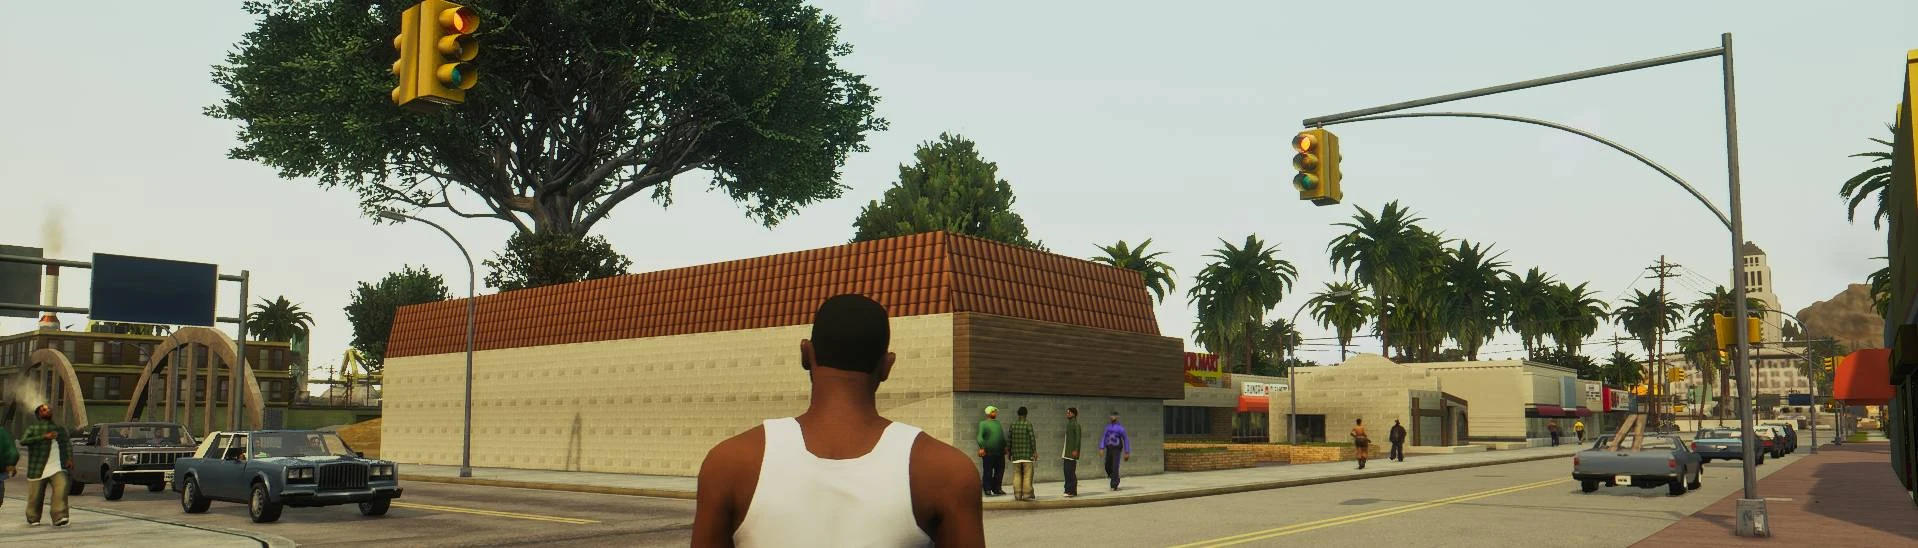 Mods más populares para GTA San Andreas en 2021